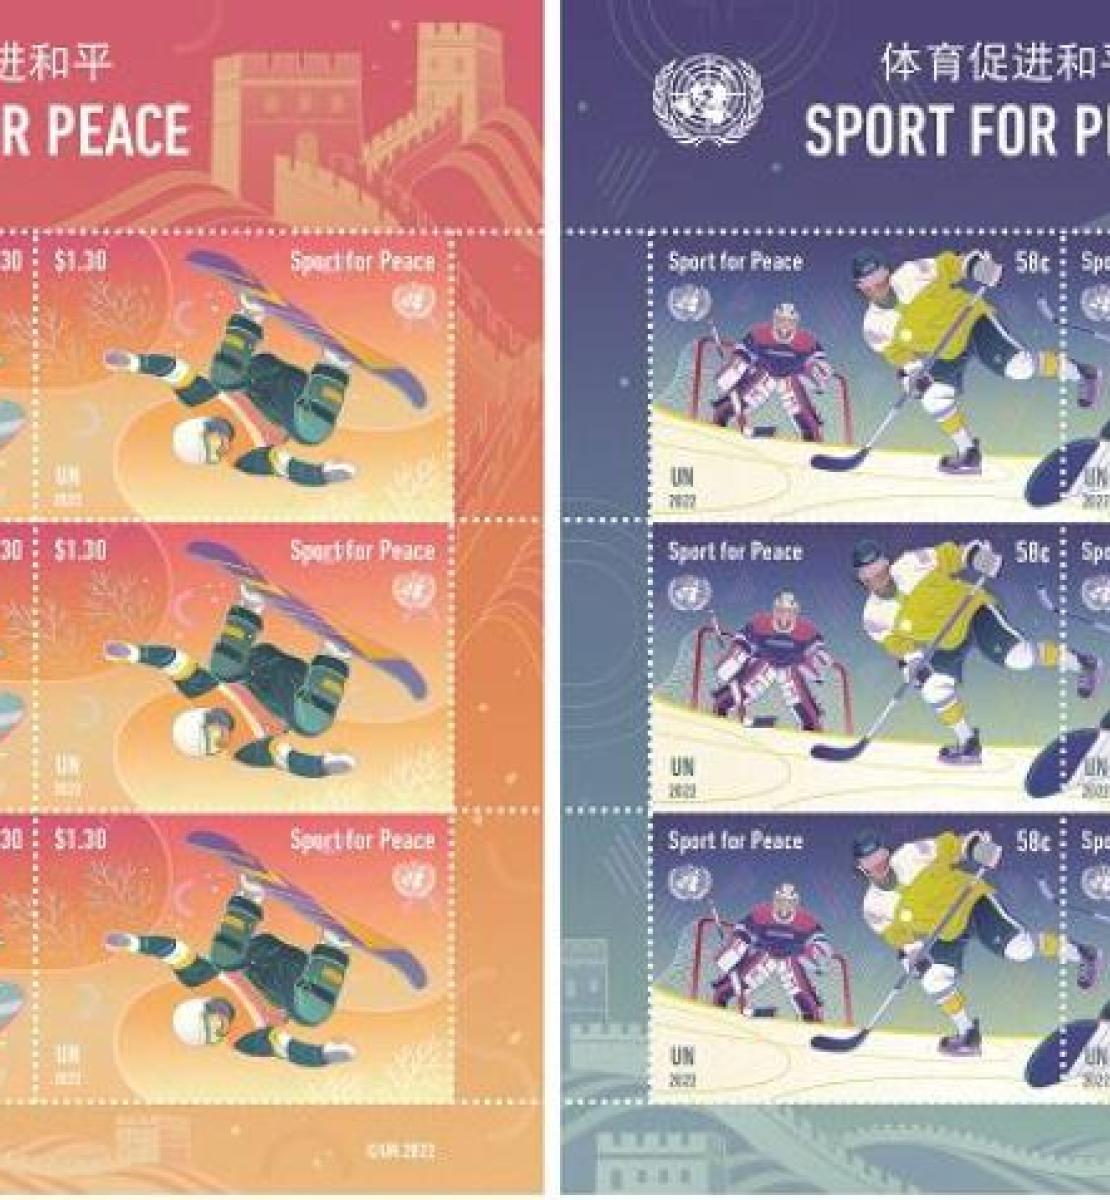 طوابع الرياضات الشتوية: "الرياضة من أجل السلام".